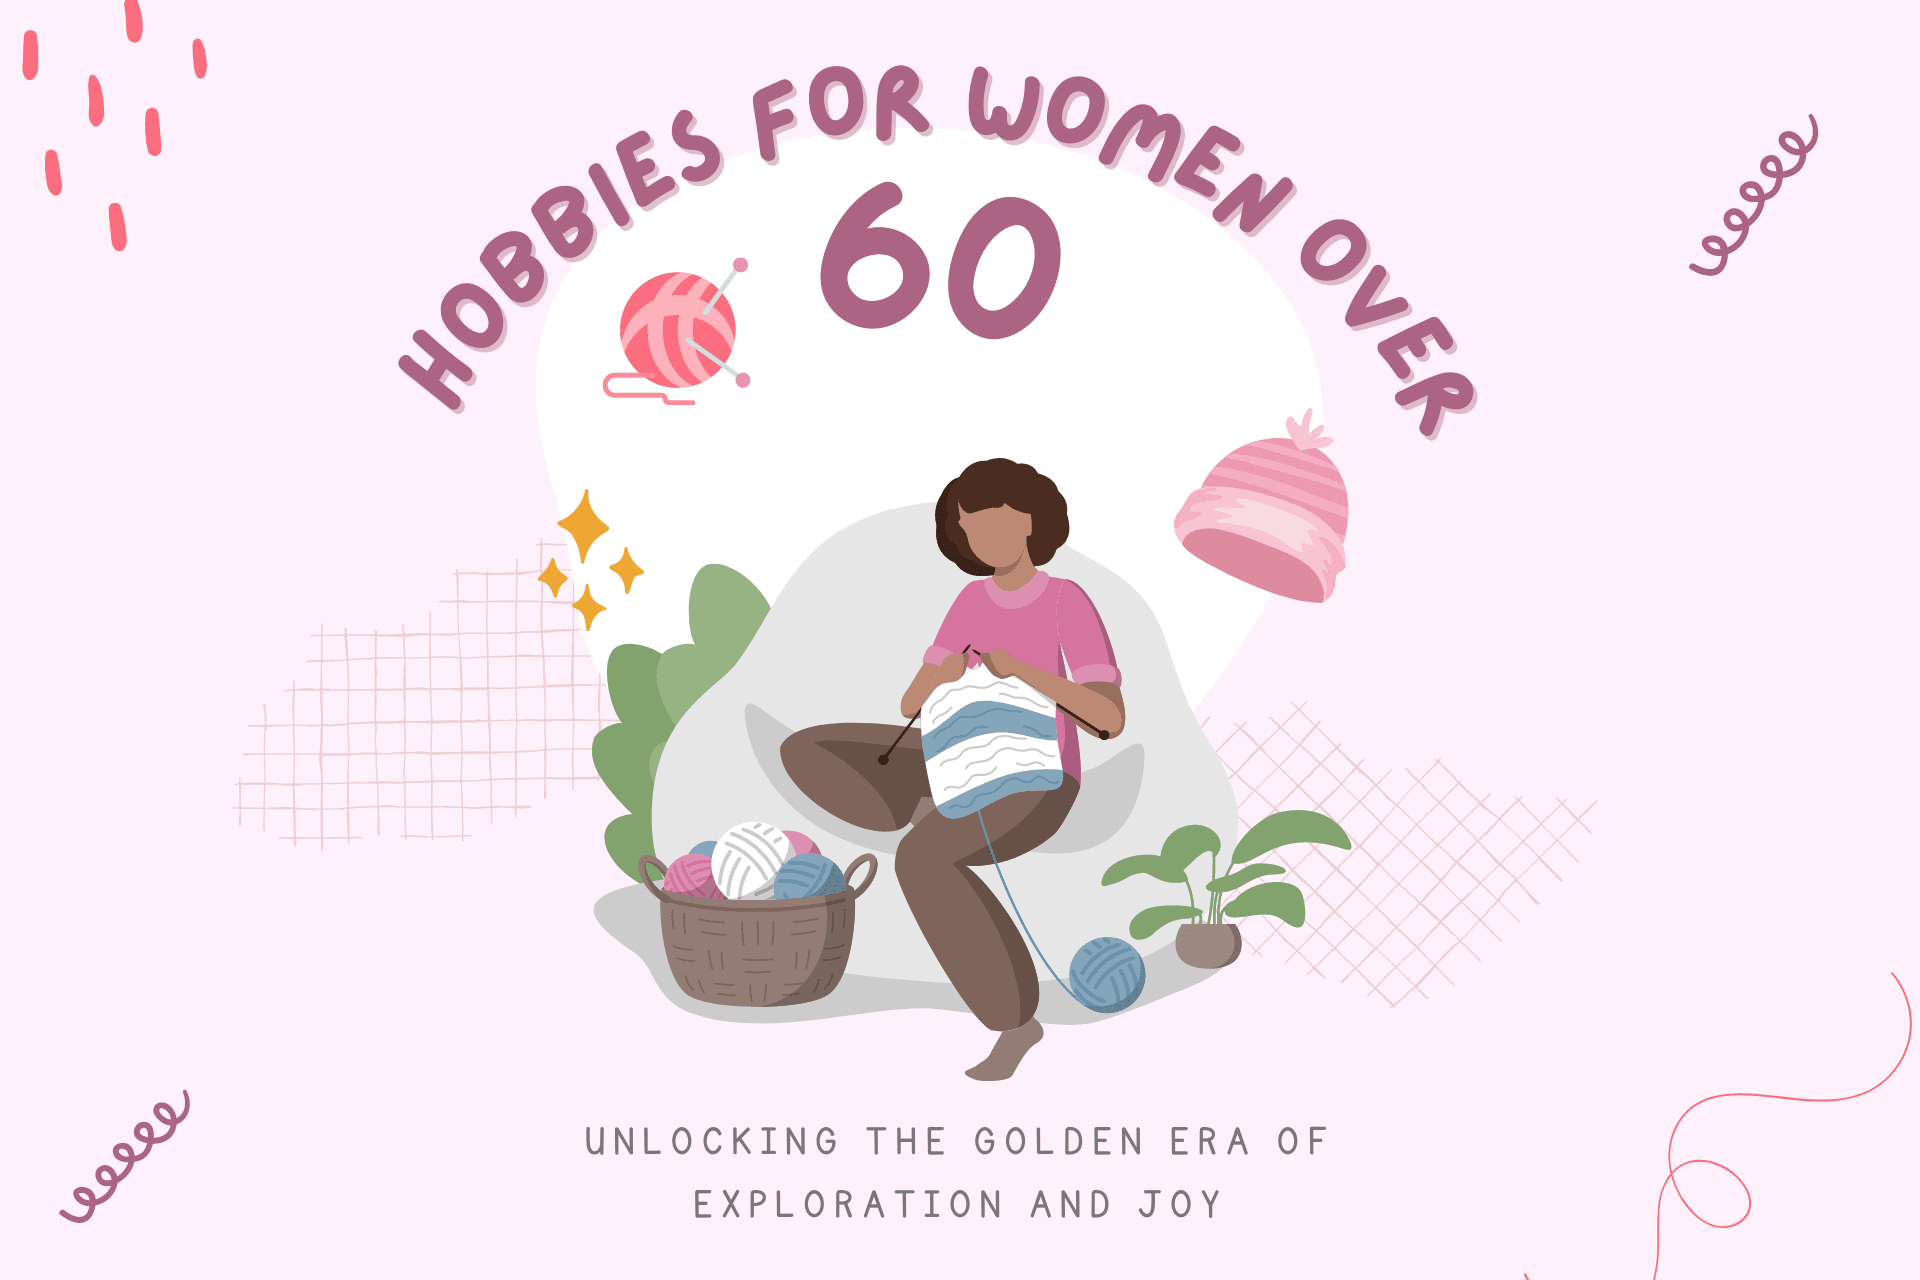 Hobbies for Women Over 60: Unlocking the Golden Era of Joy!